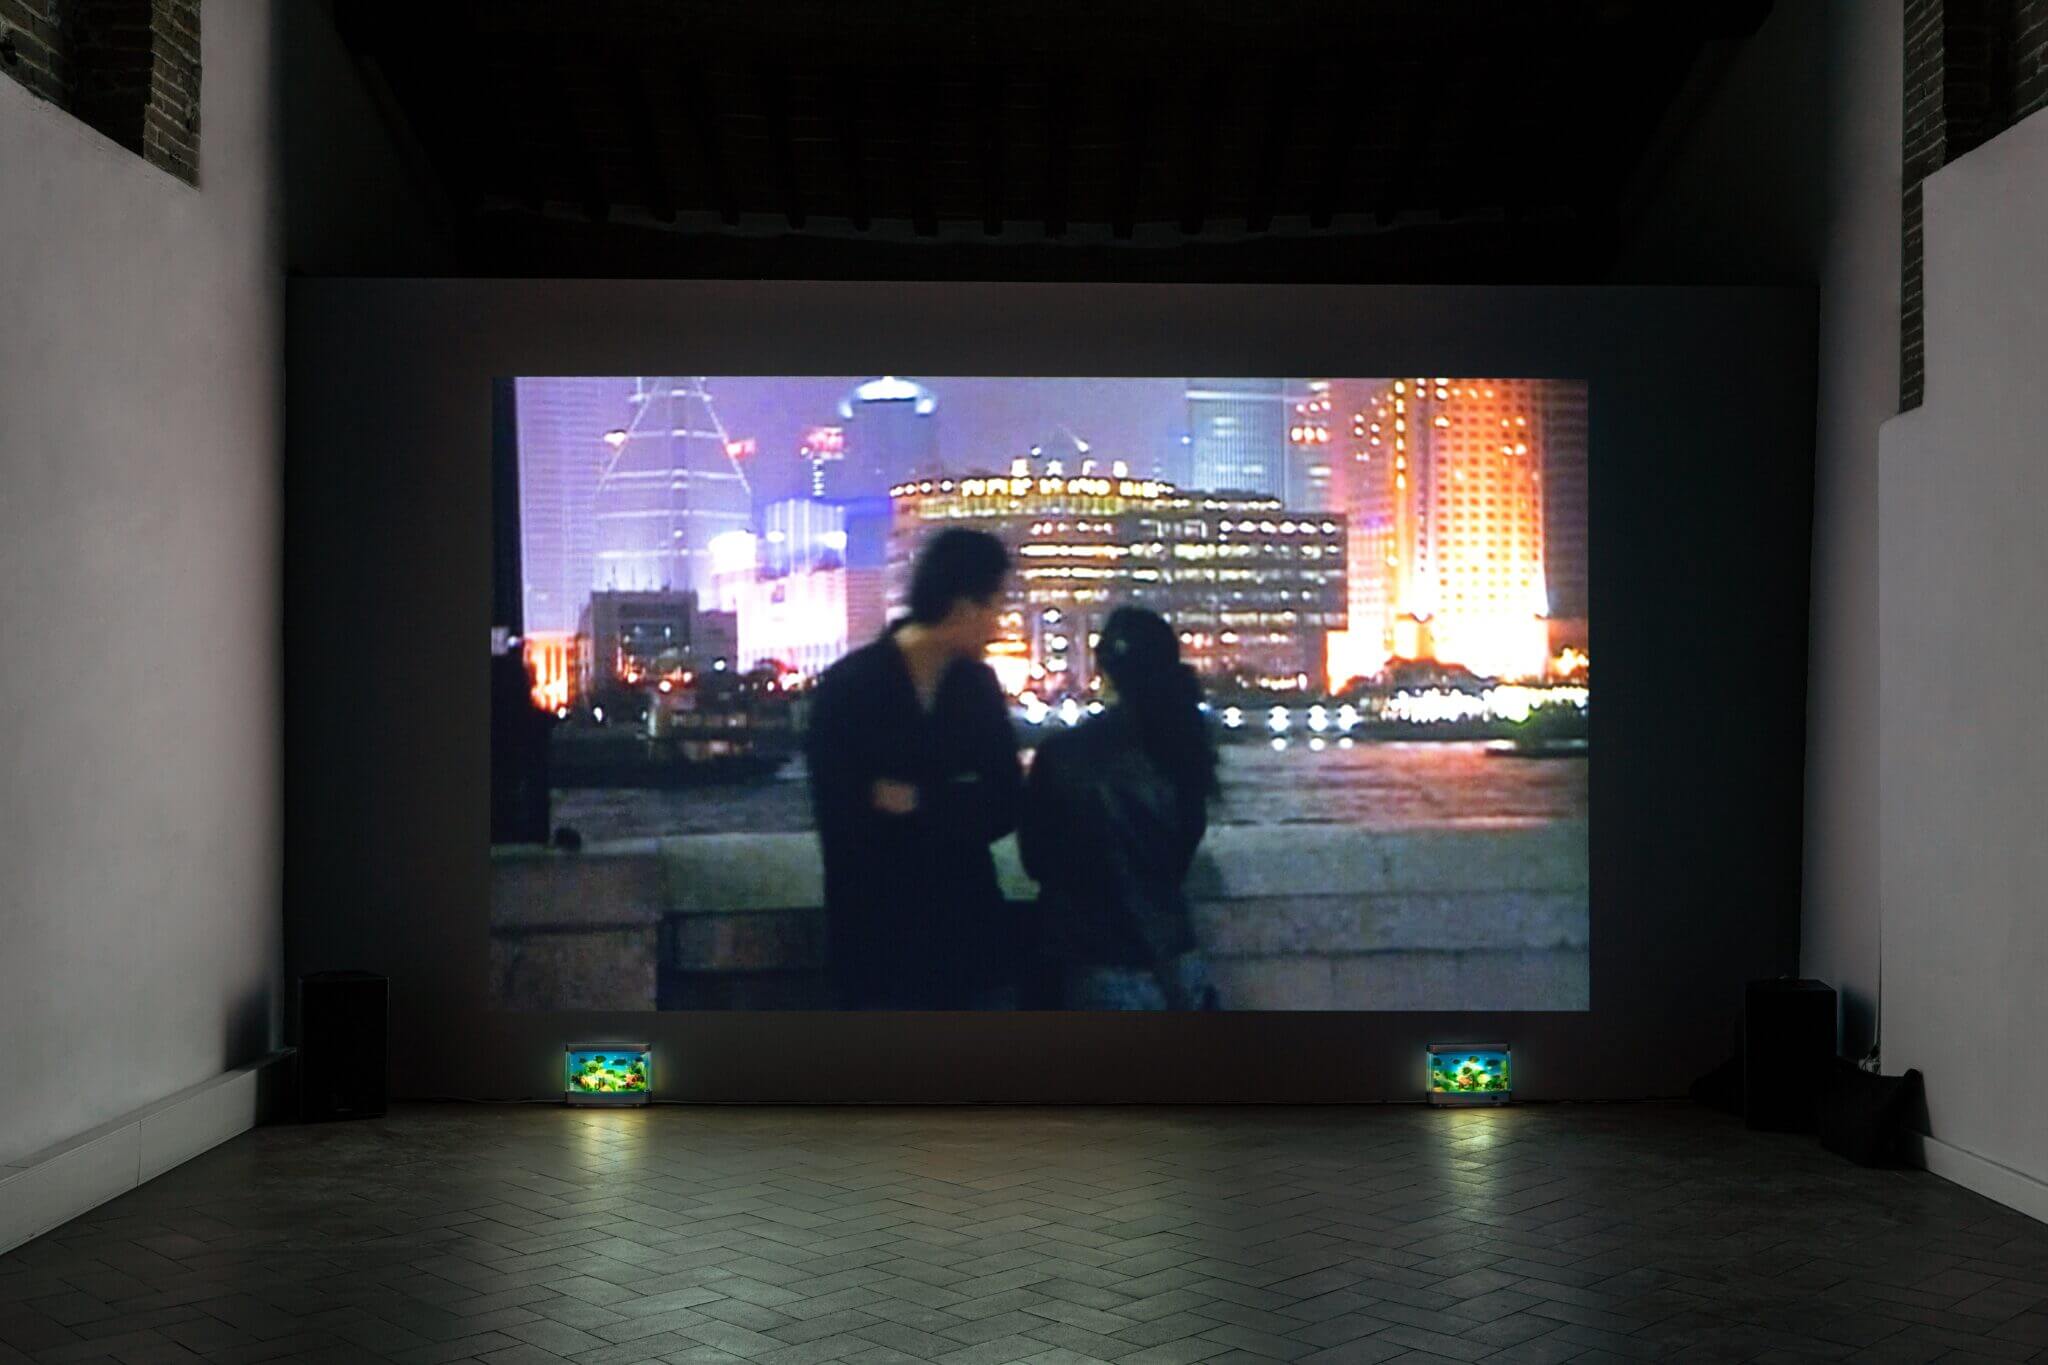 STANZE. Sul custodire e il perdere – Chantal Akerman a Casa Masaccio